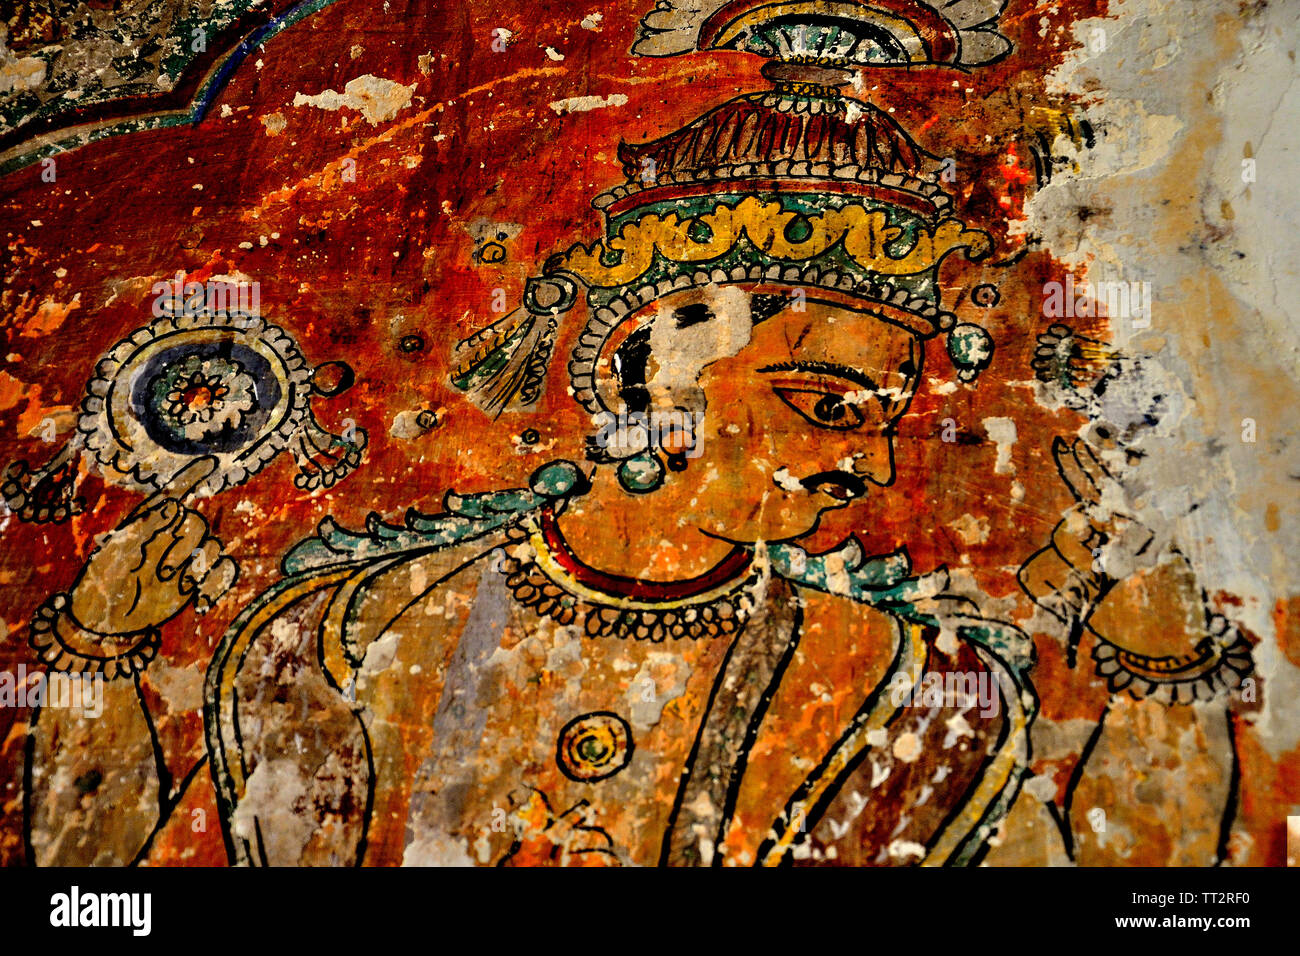 Colourful paintings on the inner wall of Nana Phadanvis Wada (Palace), Menavali, near Wai, Maharashtra, India Stock Photo